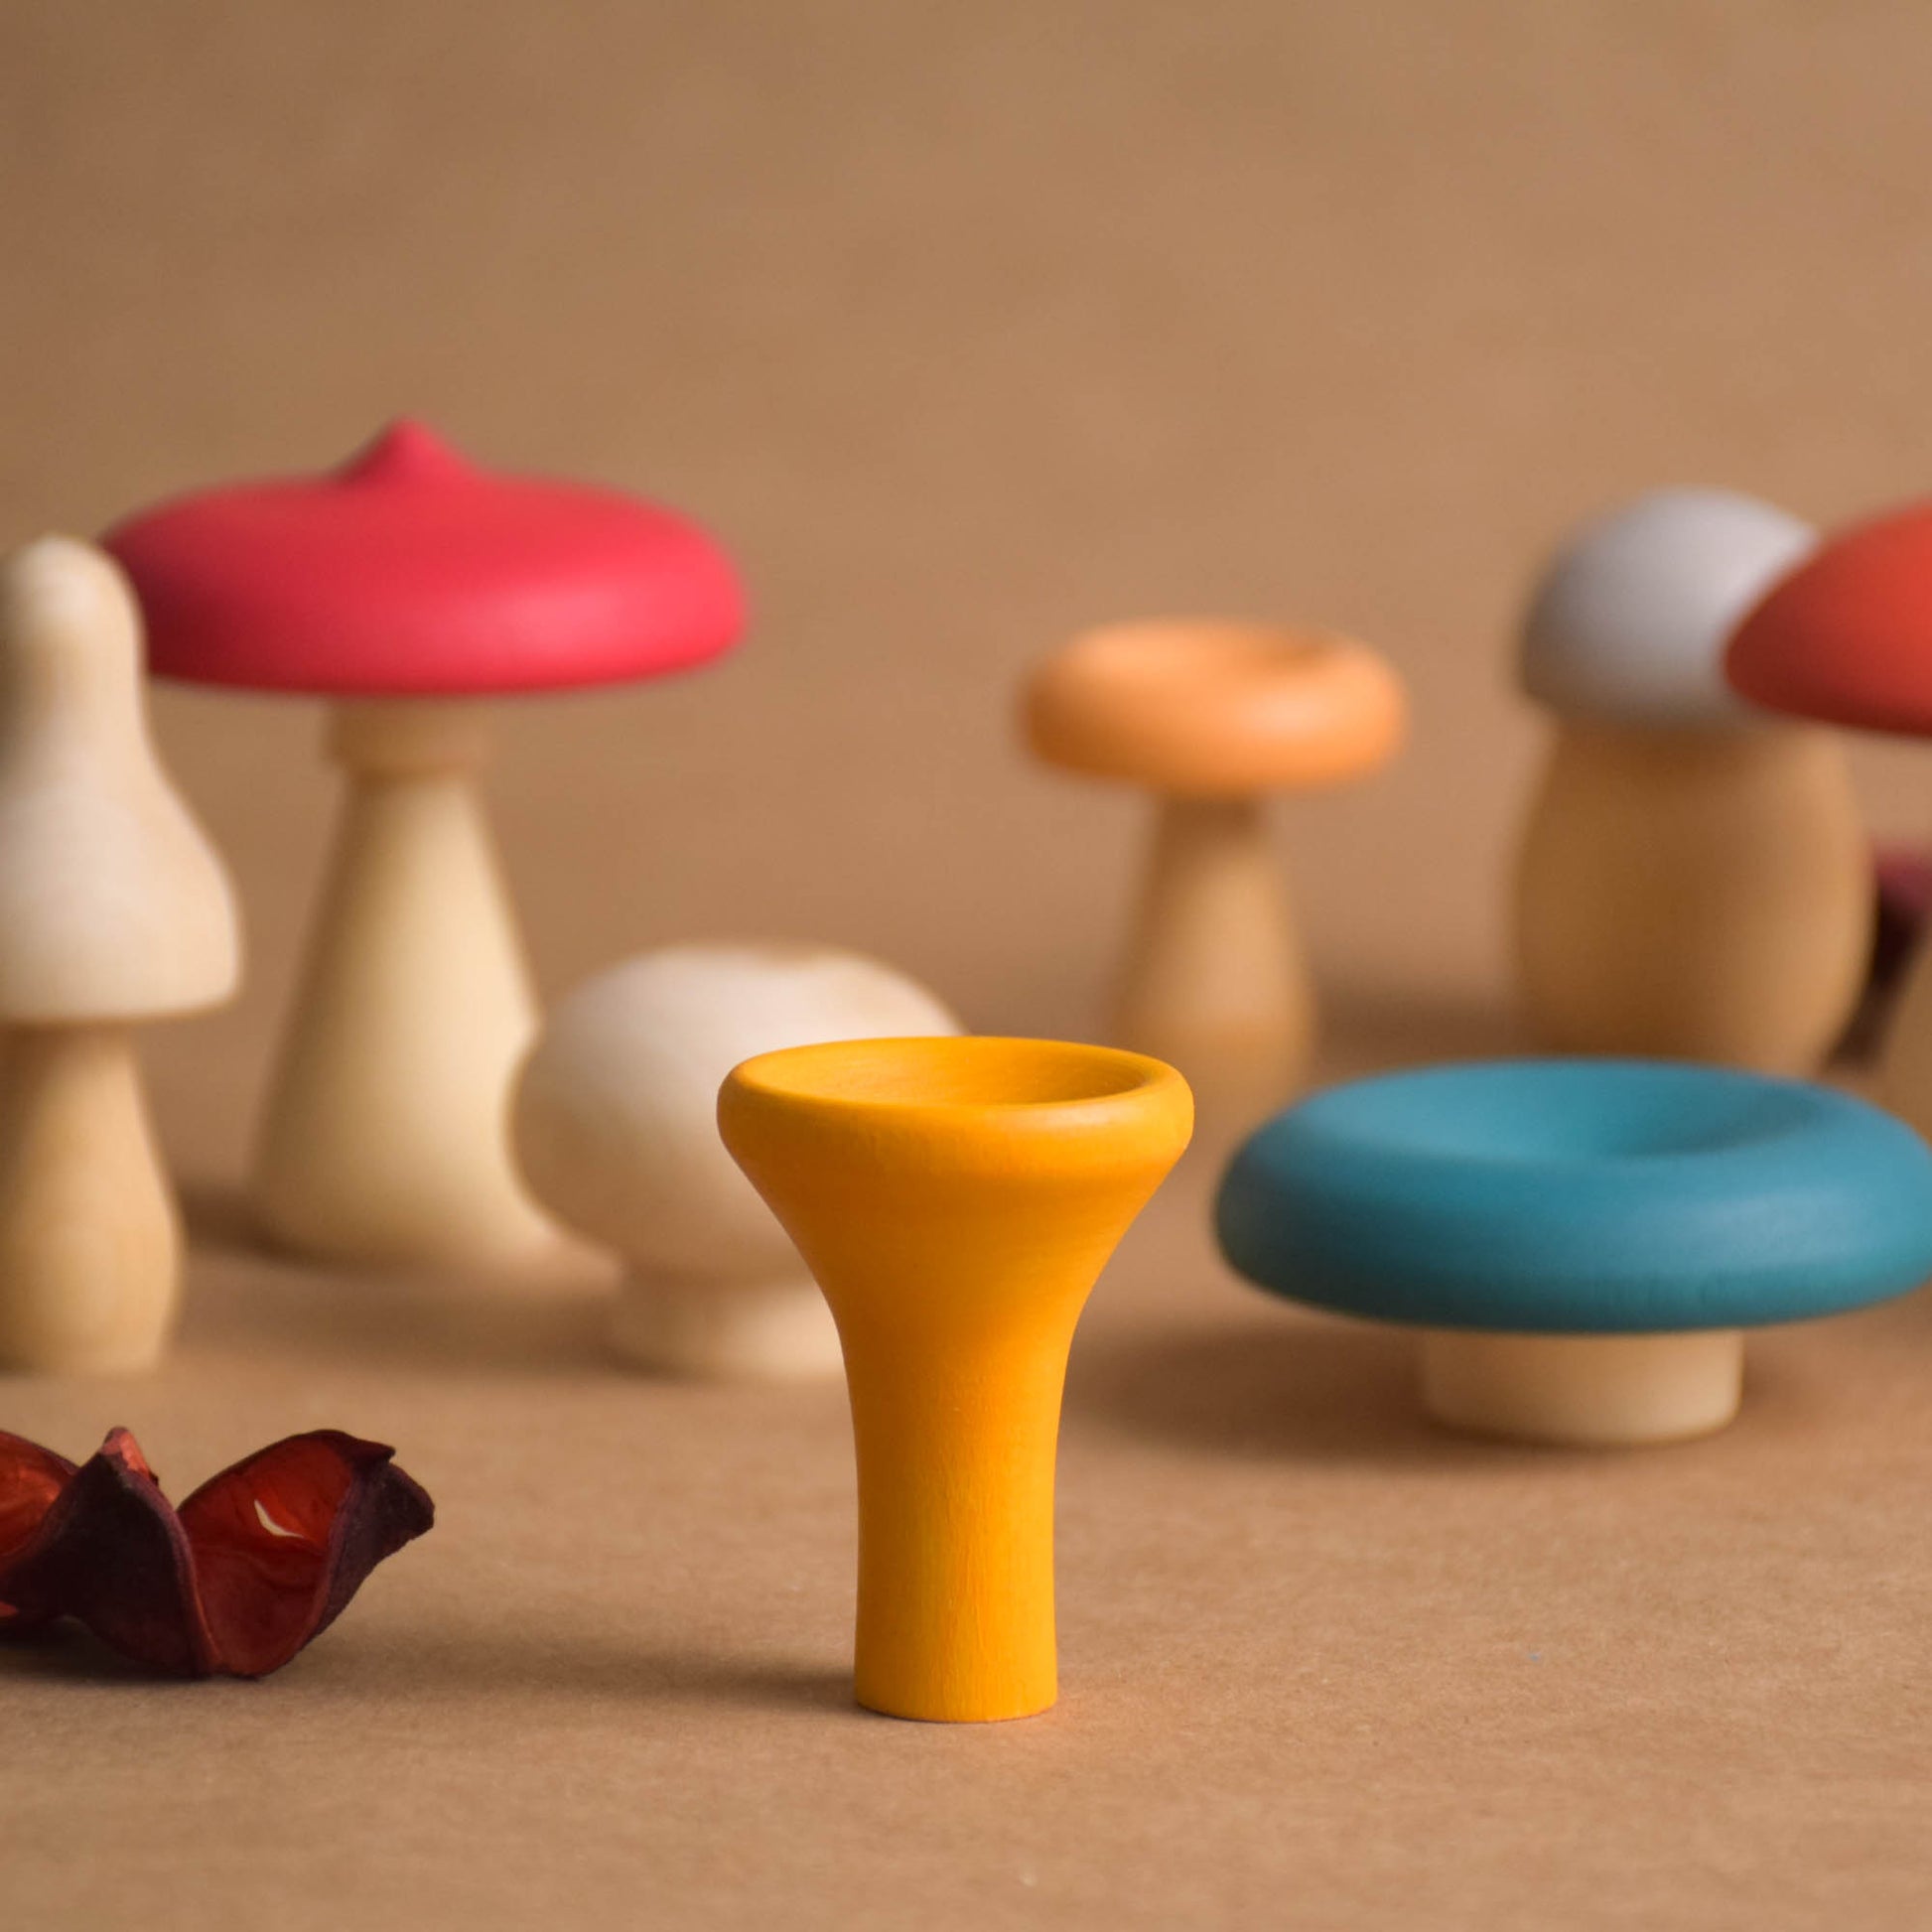 Wooden Mushroom Set